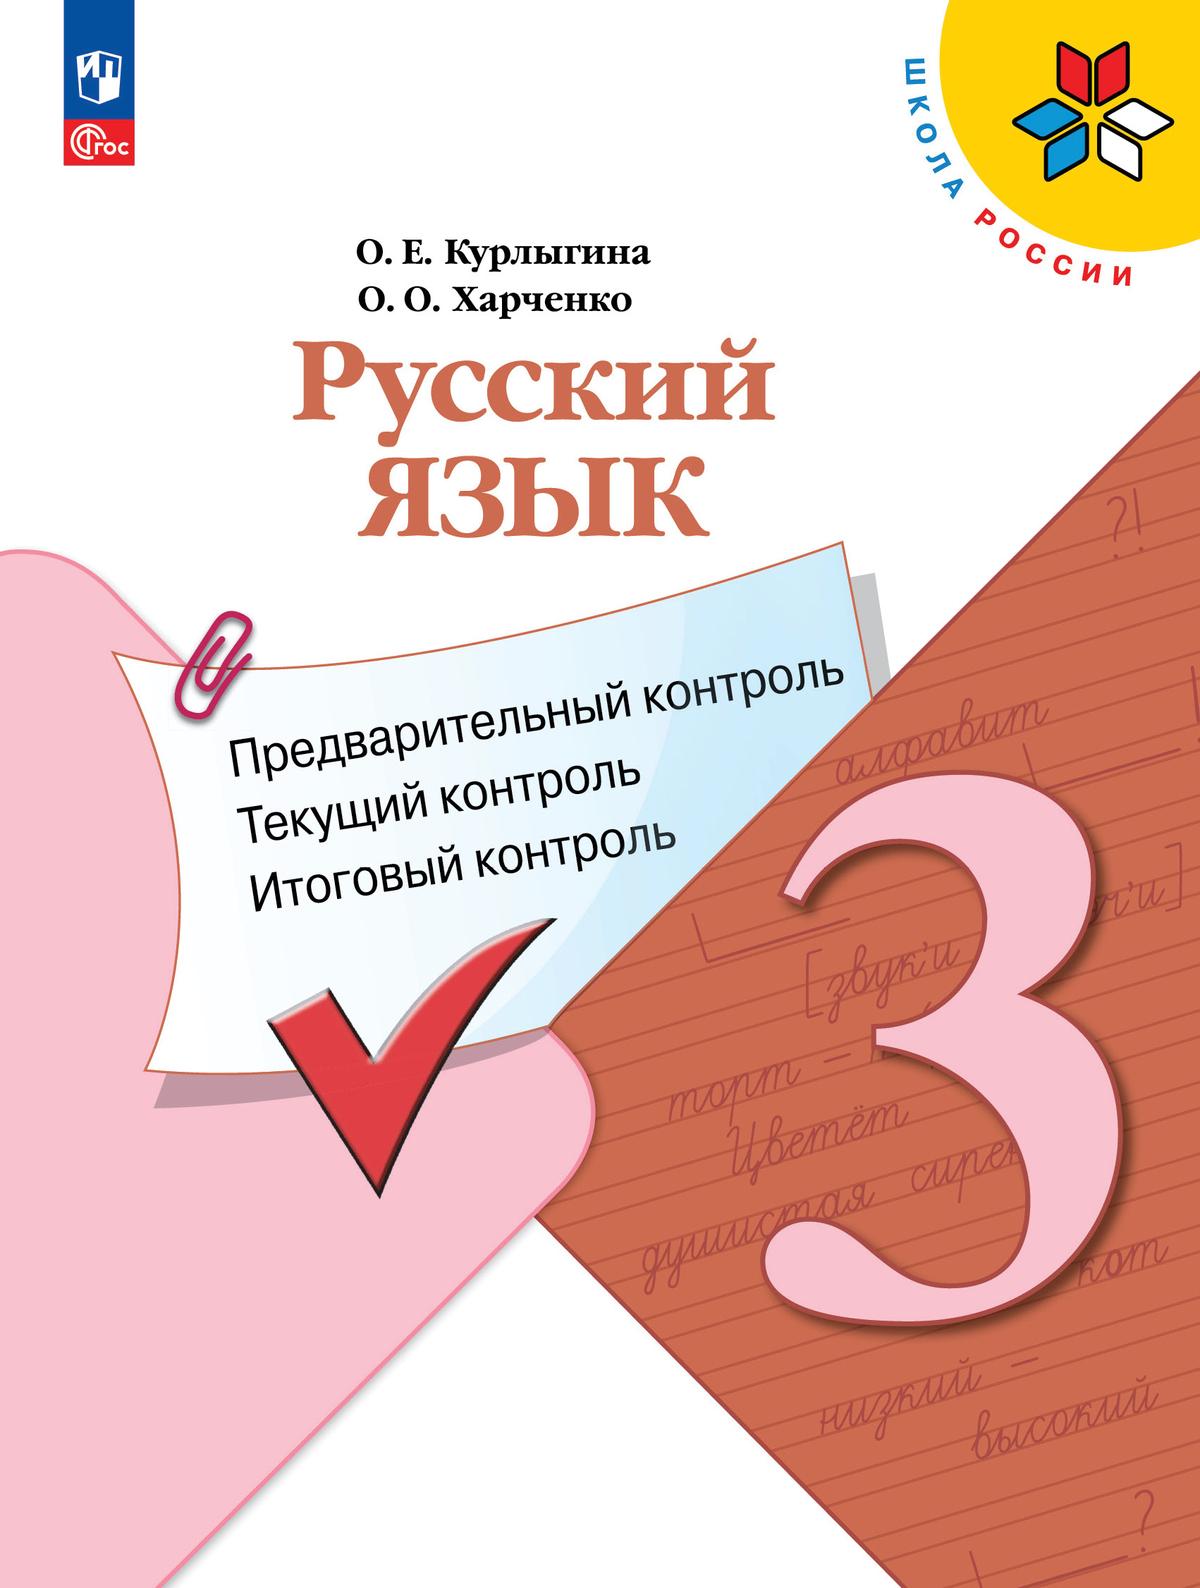 Русский язык: предварительный контроль, текущий контроль, итоговый контроль. 3 класс 1